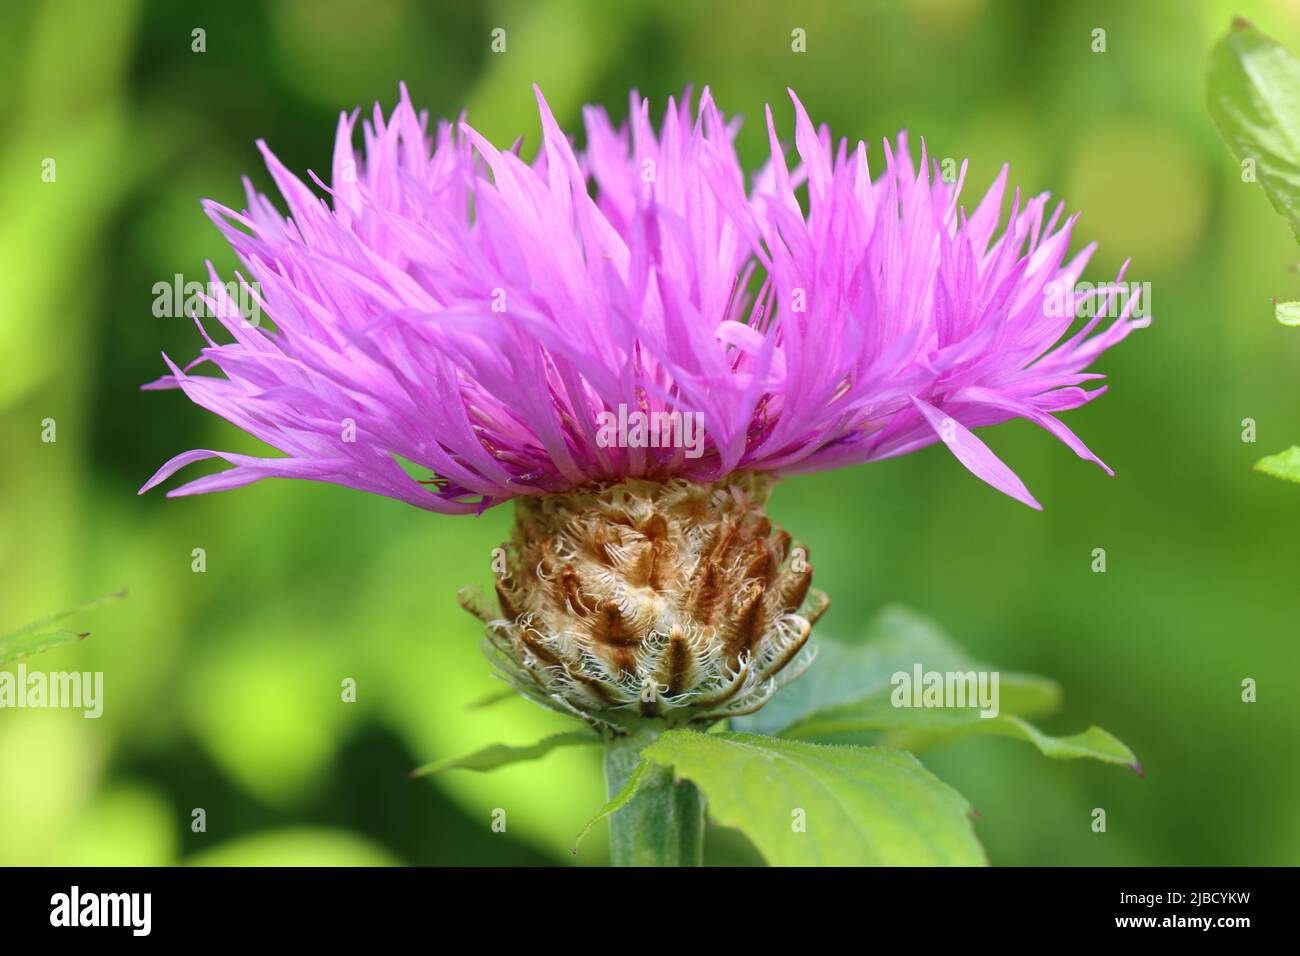 Nahaufnahme einer schönen hellvioletten centaurea-Blume vor einem grünen unscharfen Hintergrund, Seitenansicht, selektiver Fokus Stockfoto